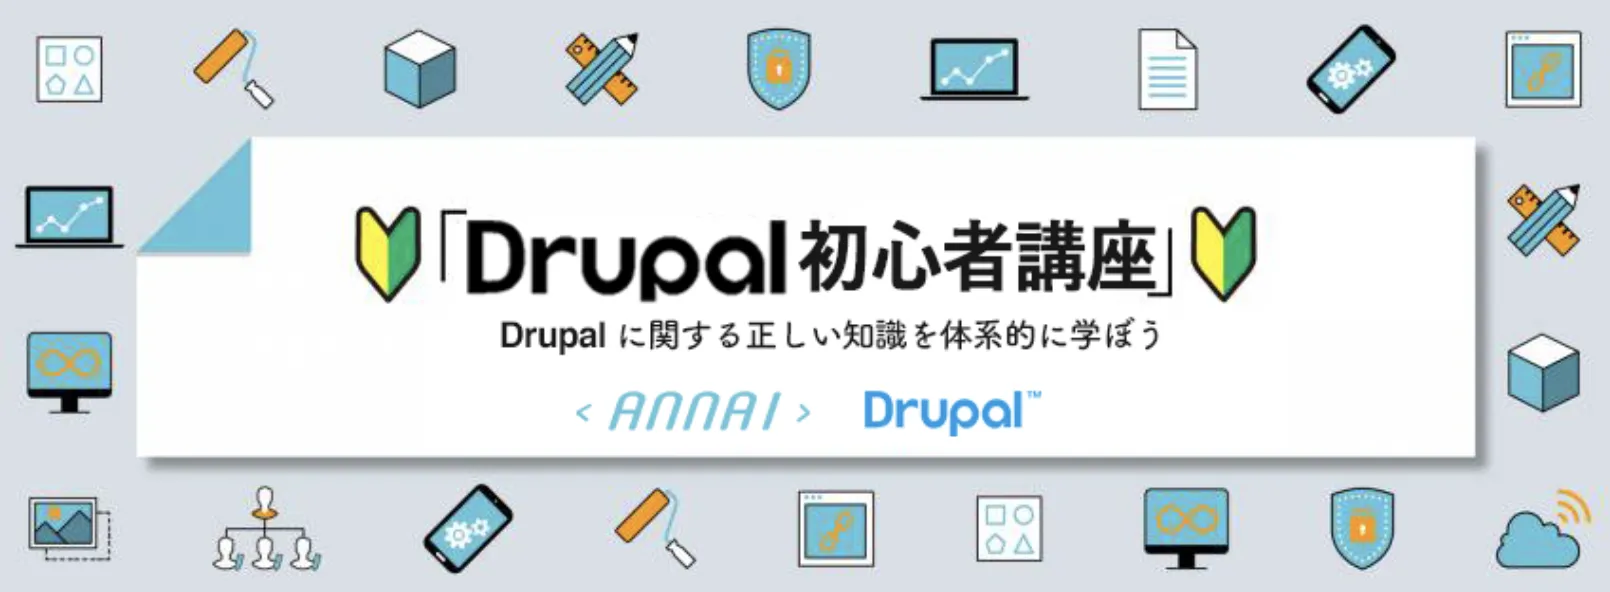 第 14 回 Drupal のテーマシステムについて